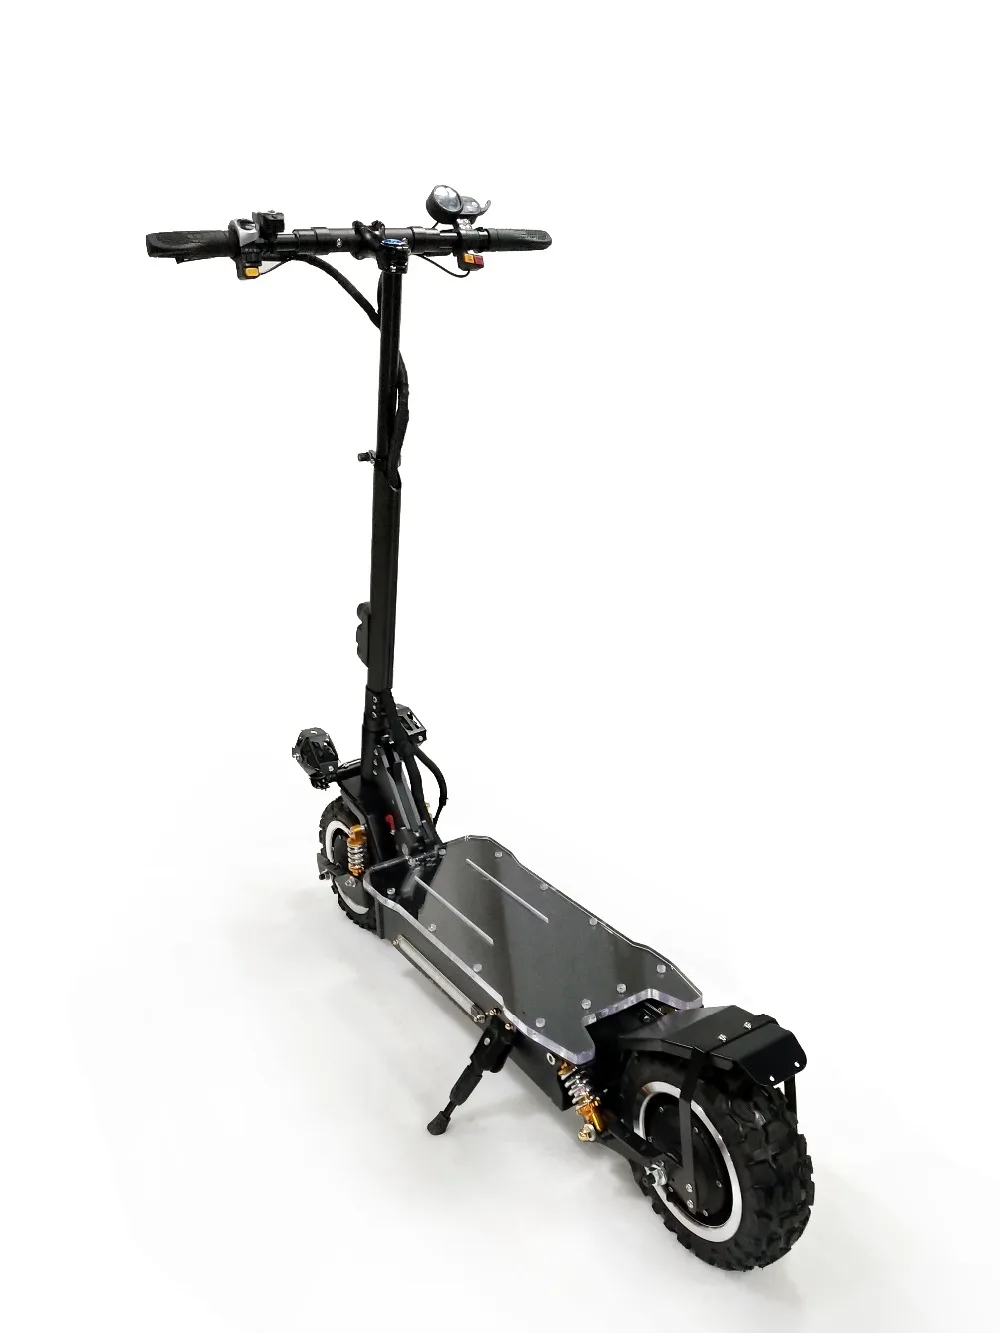 3200 Вт 60 в 80 км/ч скутер электрический 11 дюймов внедорожный подростковый складной водонепроницаемый samsung e скутер мощный Hoverboad скейтборд